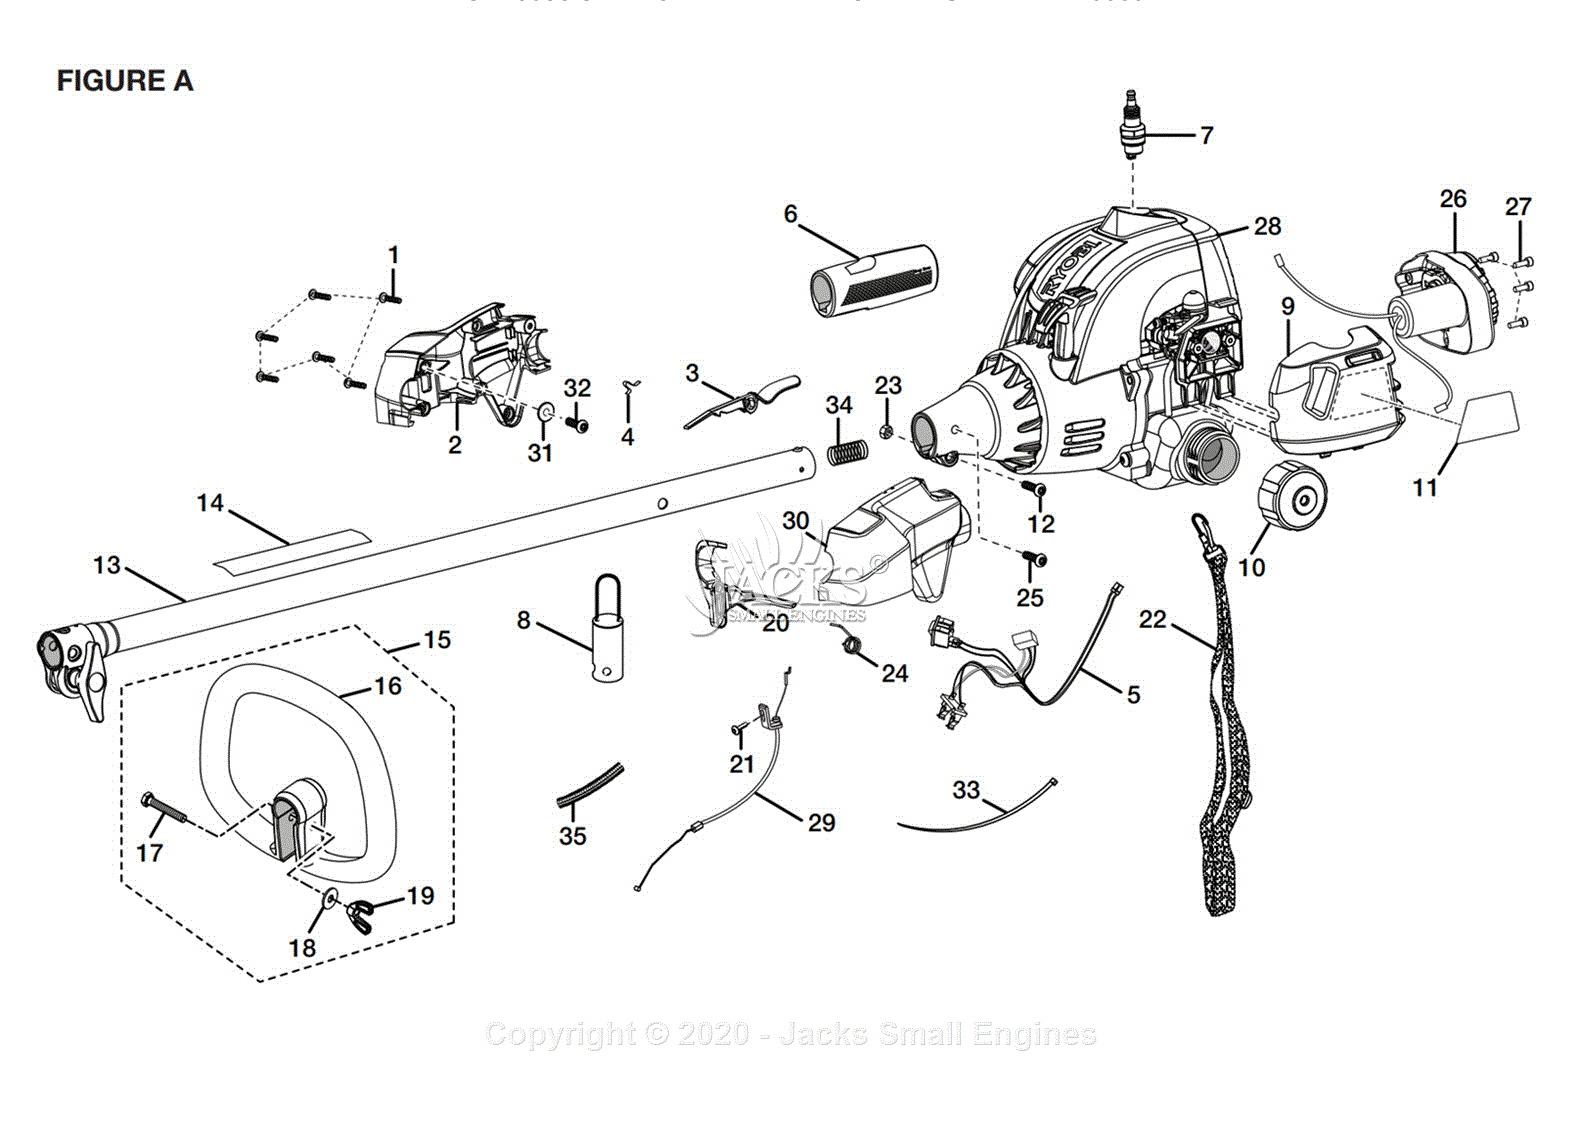 Ryobi Ry29550 Parts Diagram For Figure A